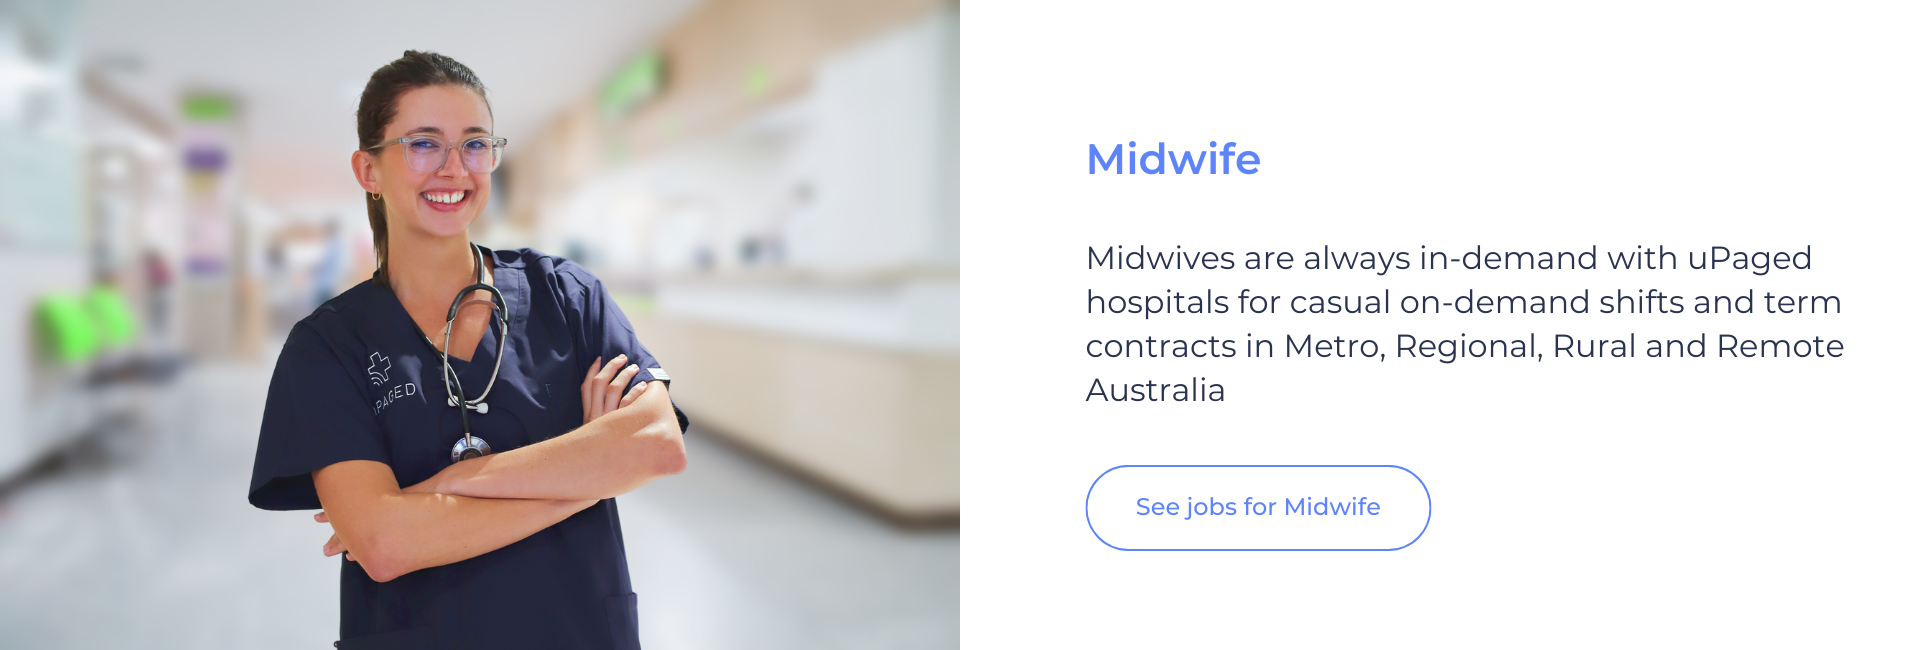 Midwife nurse upaged